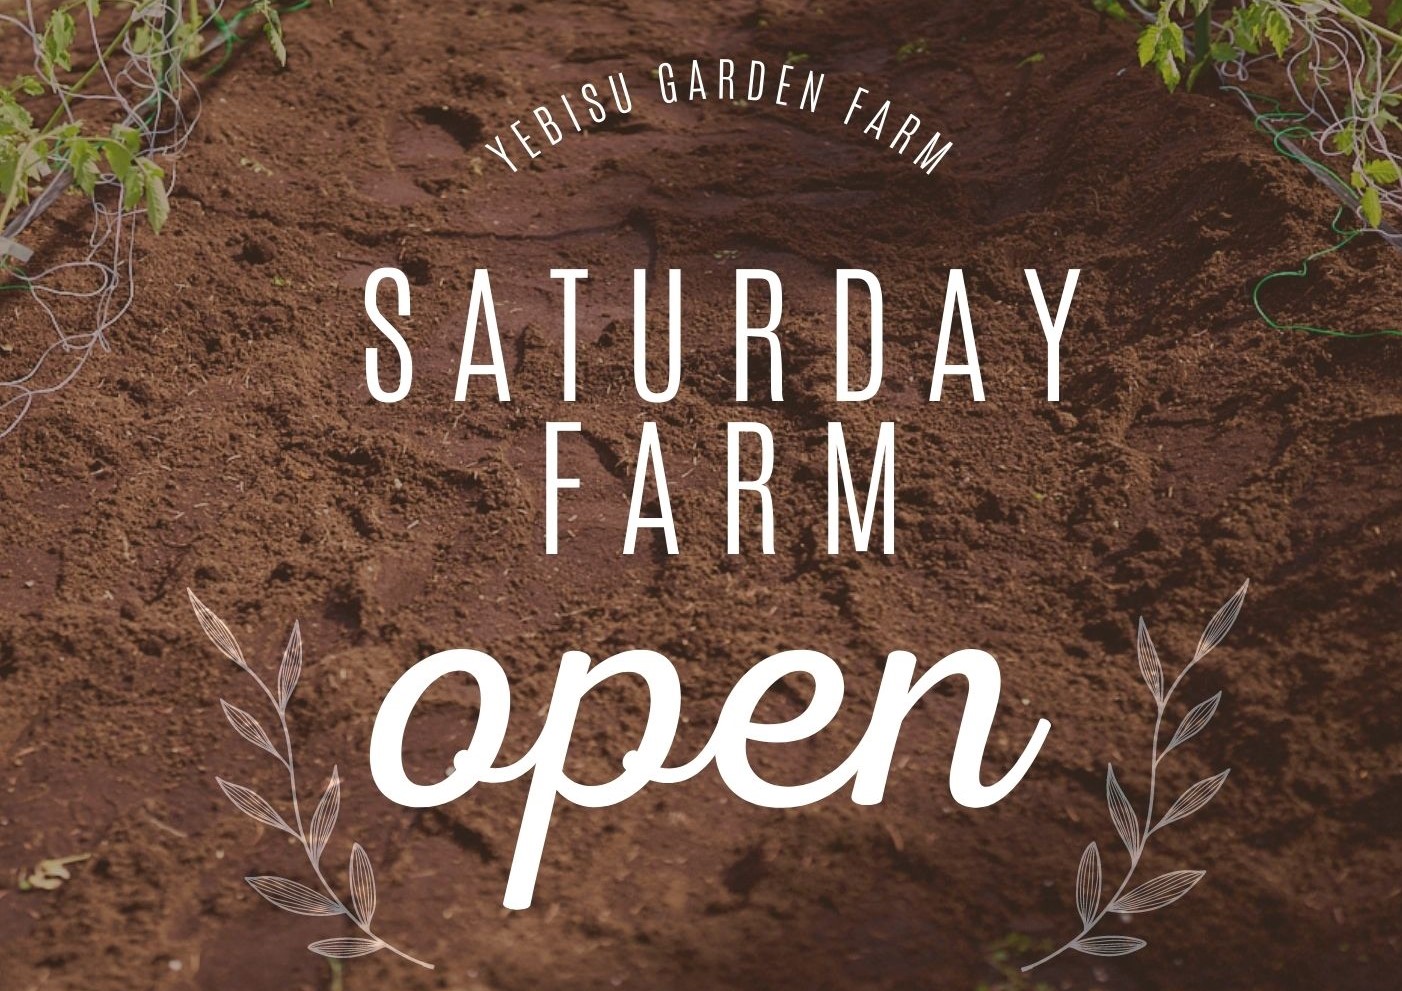 SATURDAY FARM @YEBISU GARDEN FARM - URBAN FARMERS CLUB